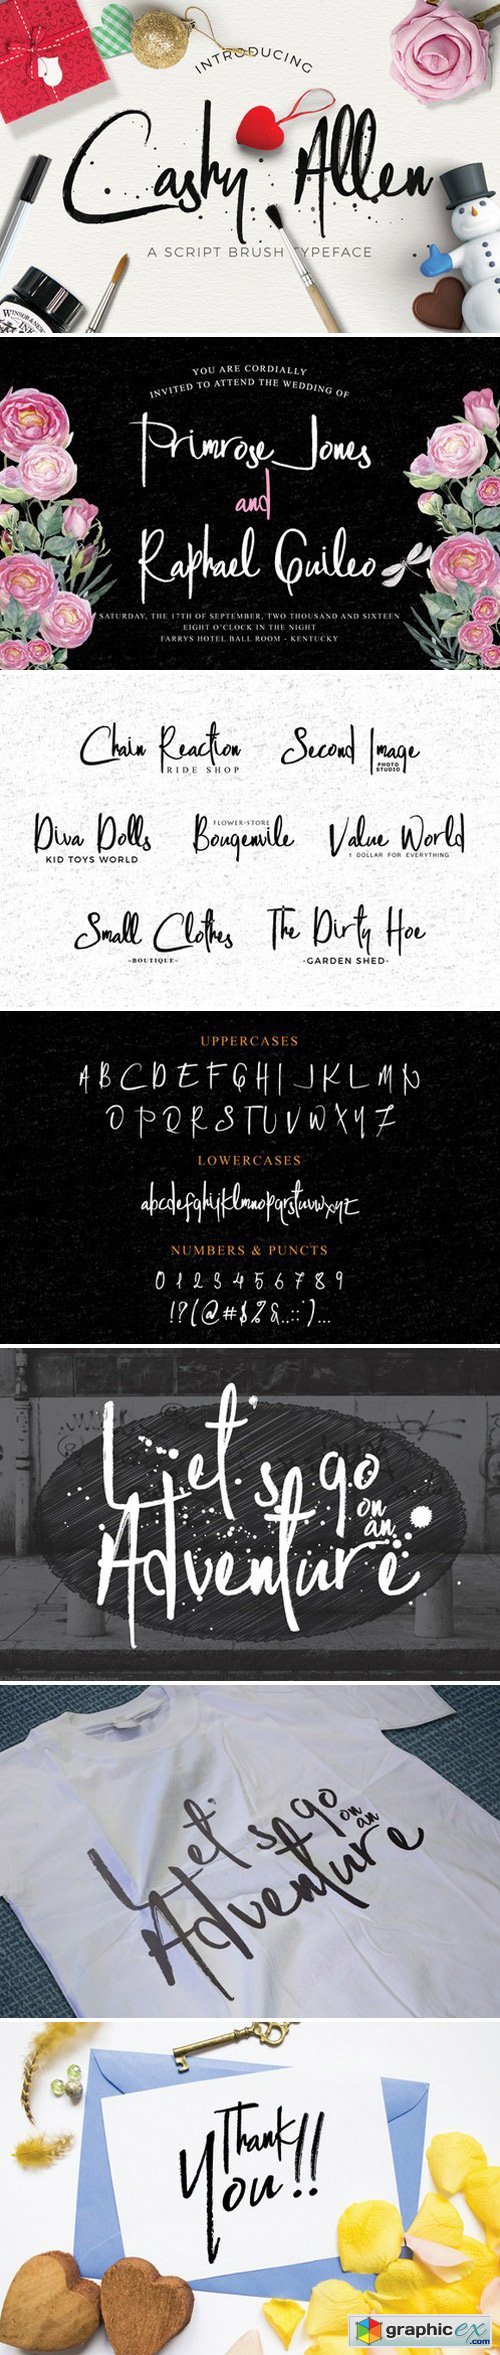 Cashy Allen Typeface